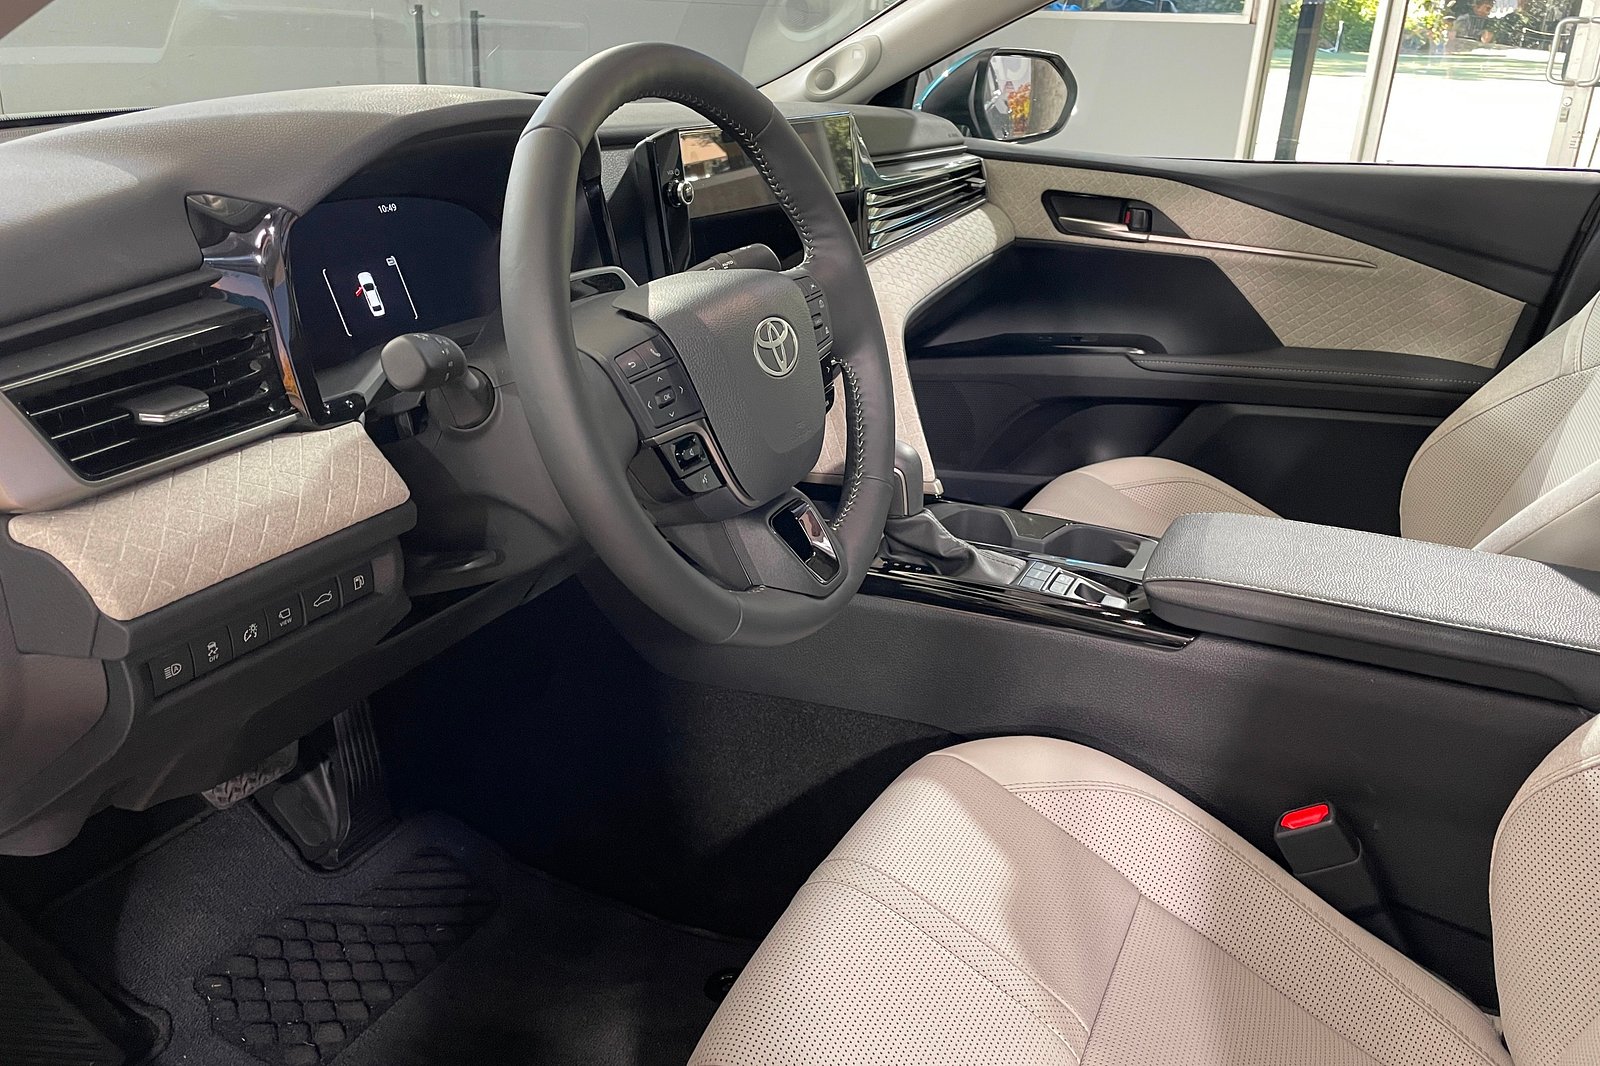 Khoang lái tổng thể nay hiện đại, rành mạch và gọn gàng với các bề mặt được tách biệt rõ ràng. Bảng táp-lô, táp-bi của Toyota Camry 2025 đã được phủ lớp da, da lộn cao cấp.